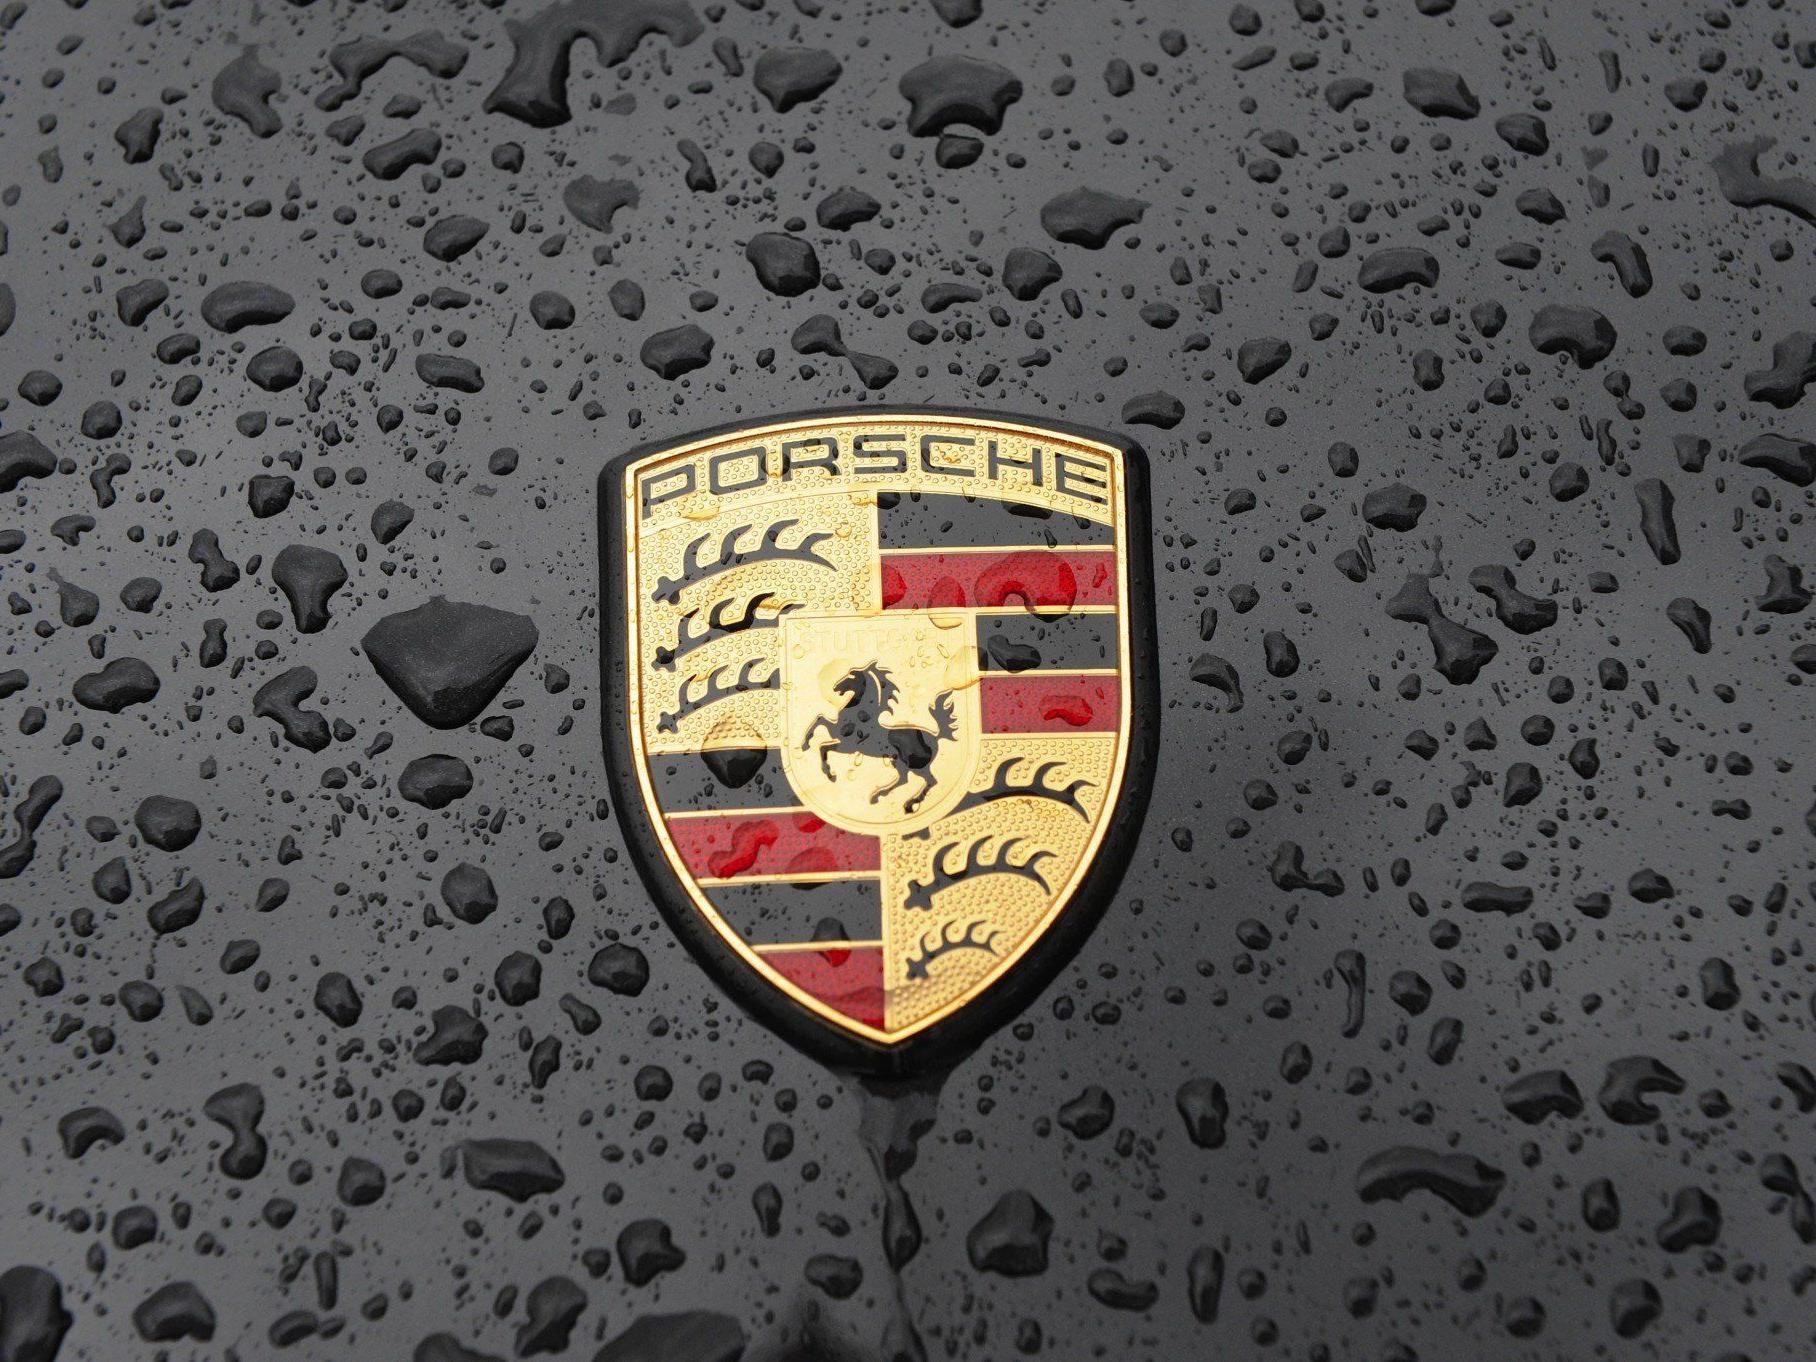 Die Familien Porsche und Piech führen die Liste der reichsten Österreicher an.